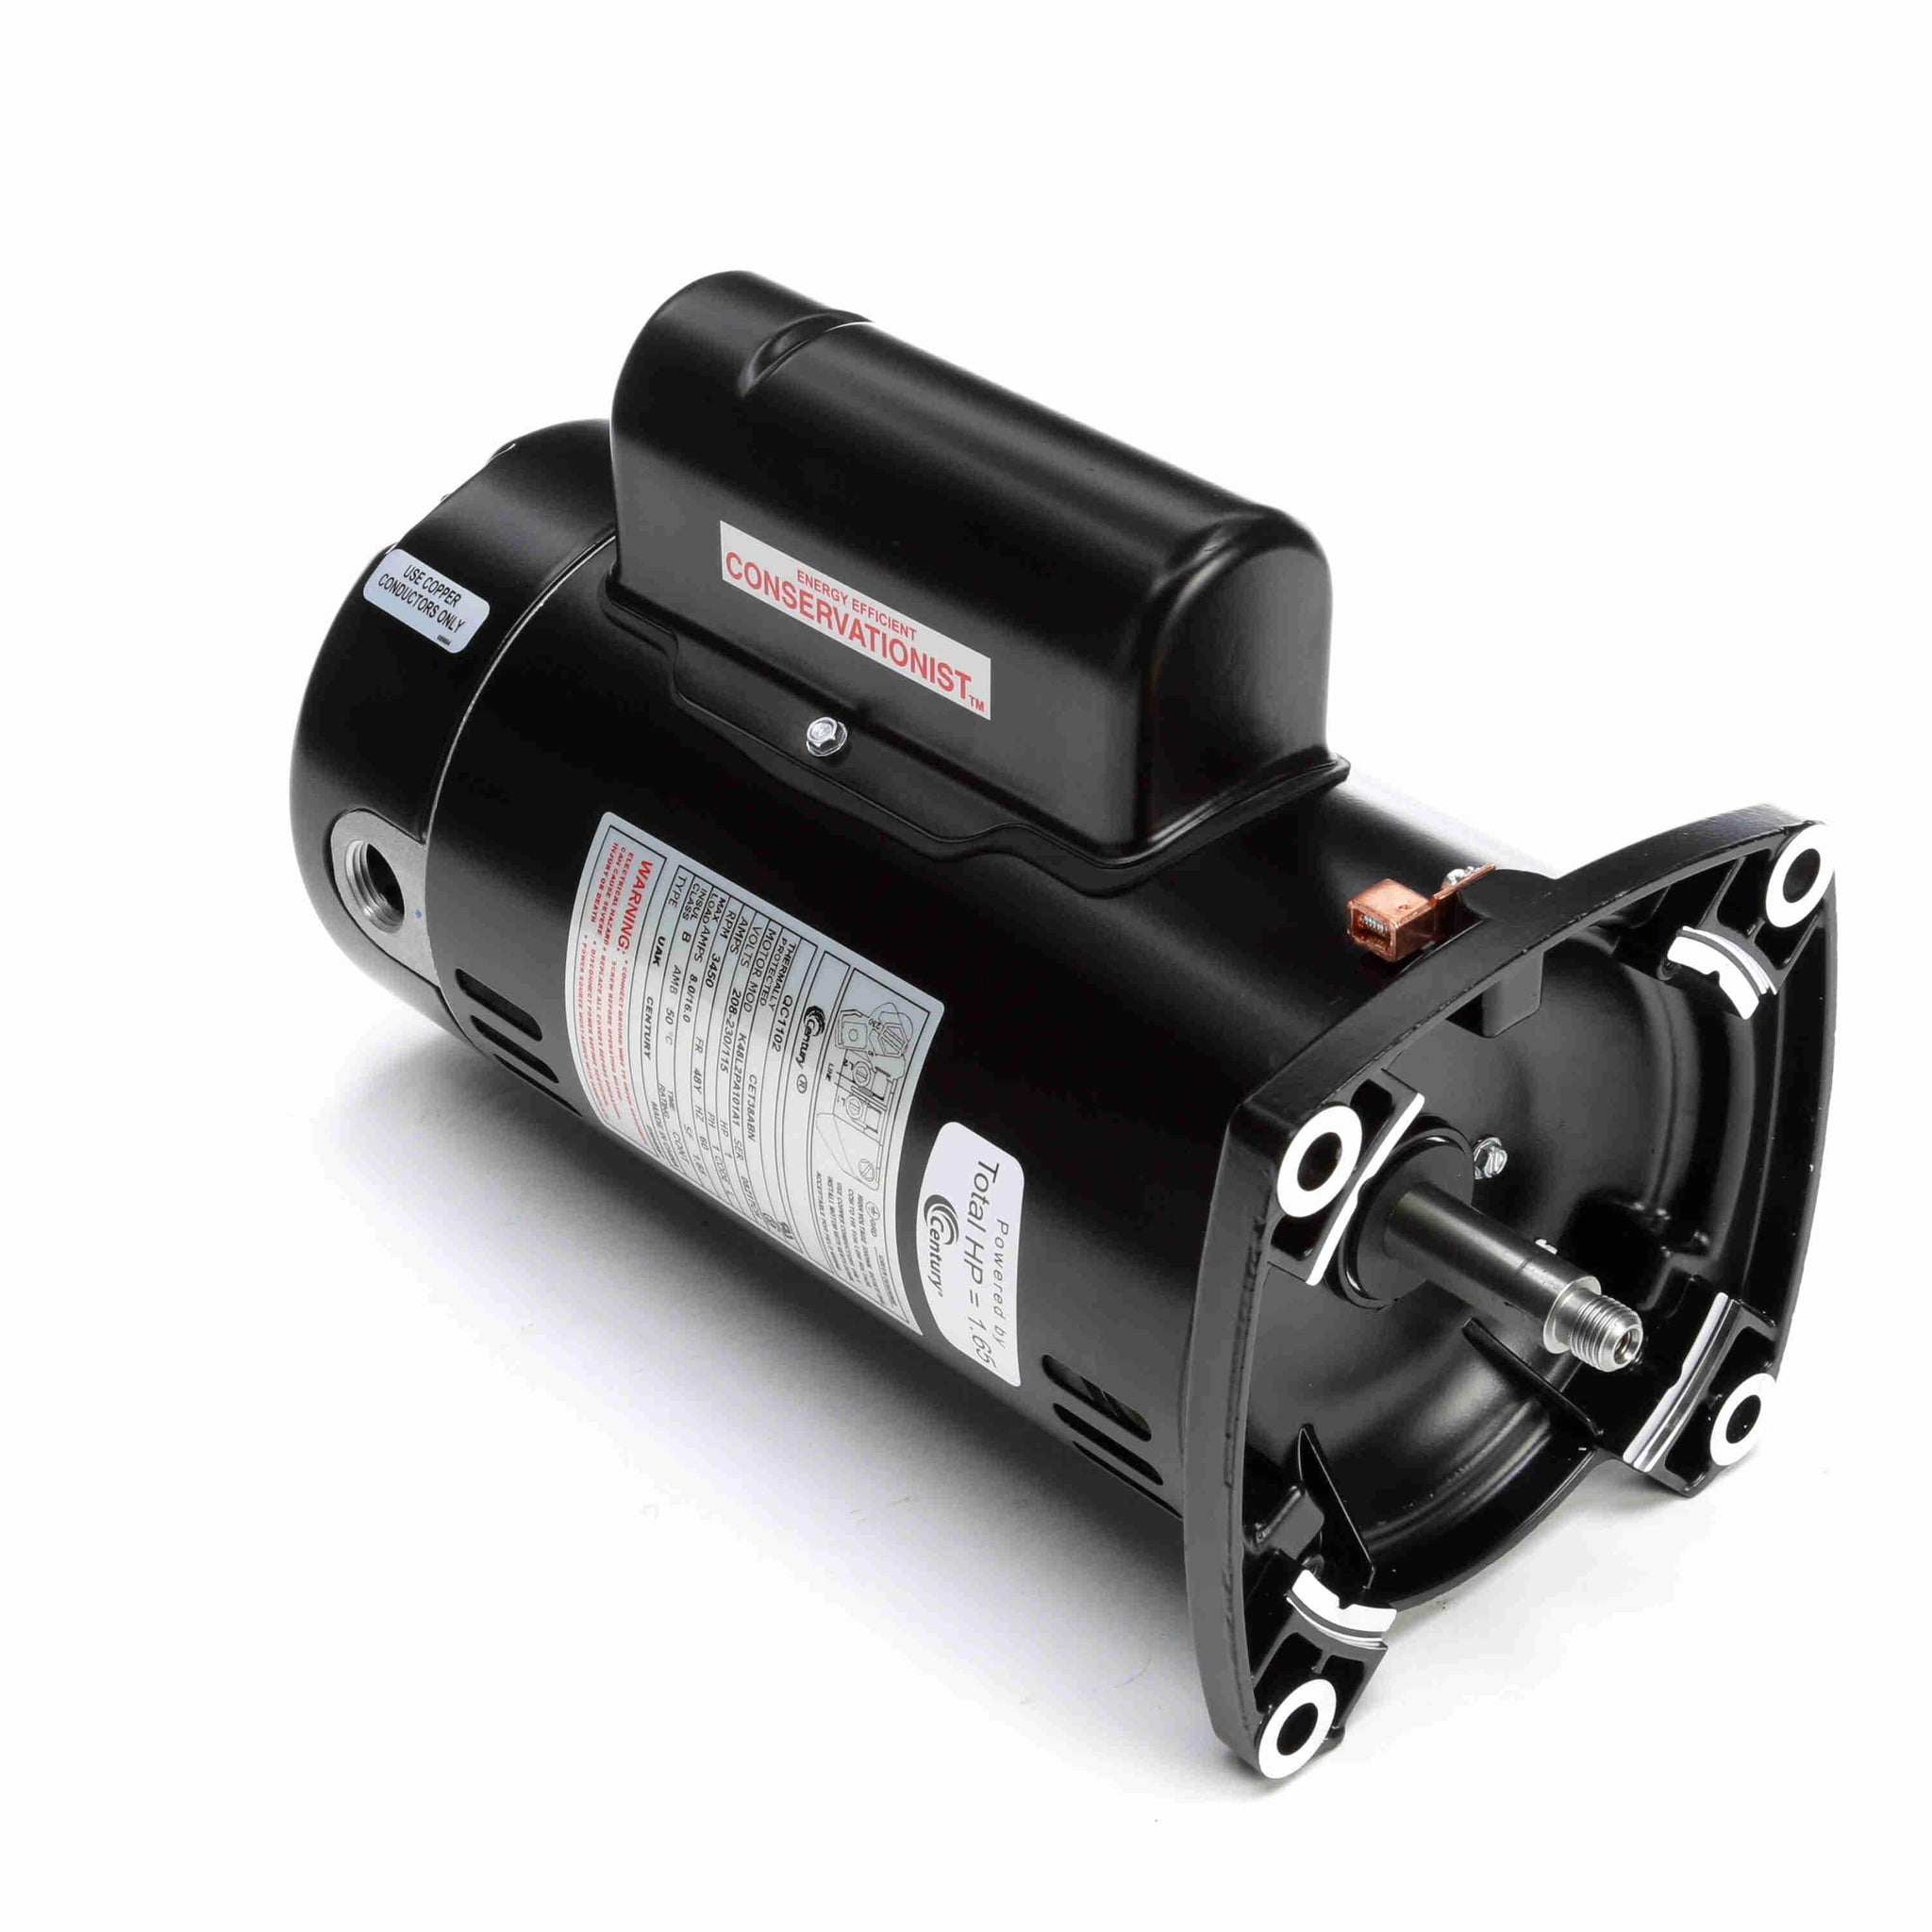 QC1102 - 1 HP Pool Pump Motor, 1 phase, 3600 RPM, 208-230/115 V, 48Y Frame, ODP - Hardware & Moreee